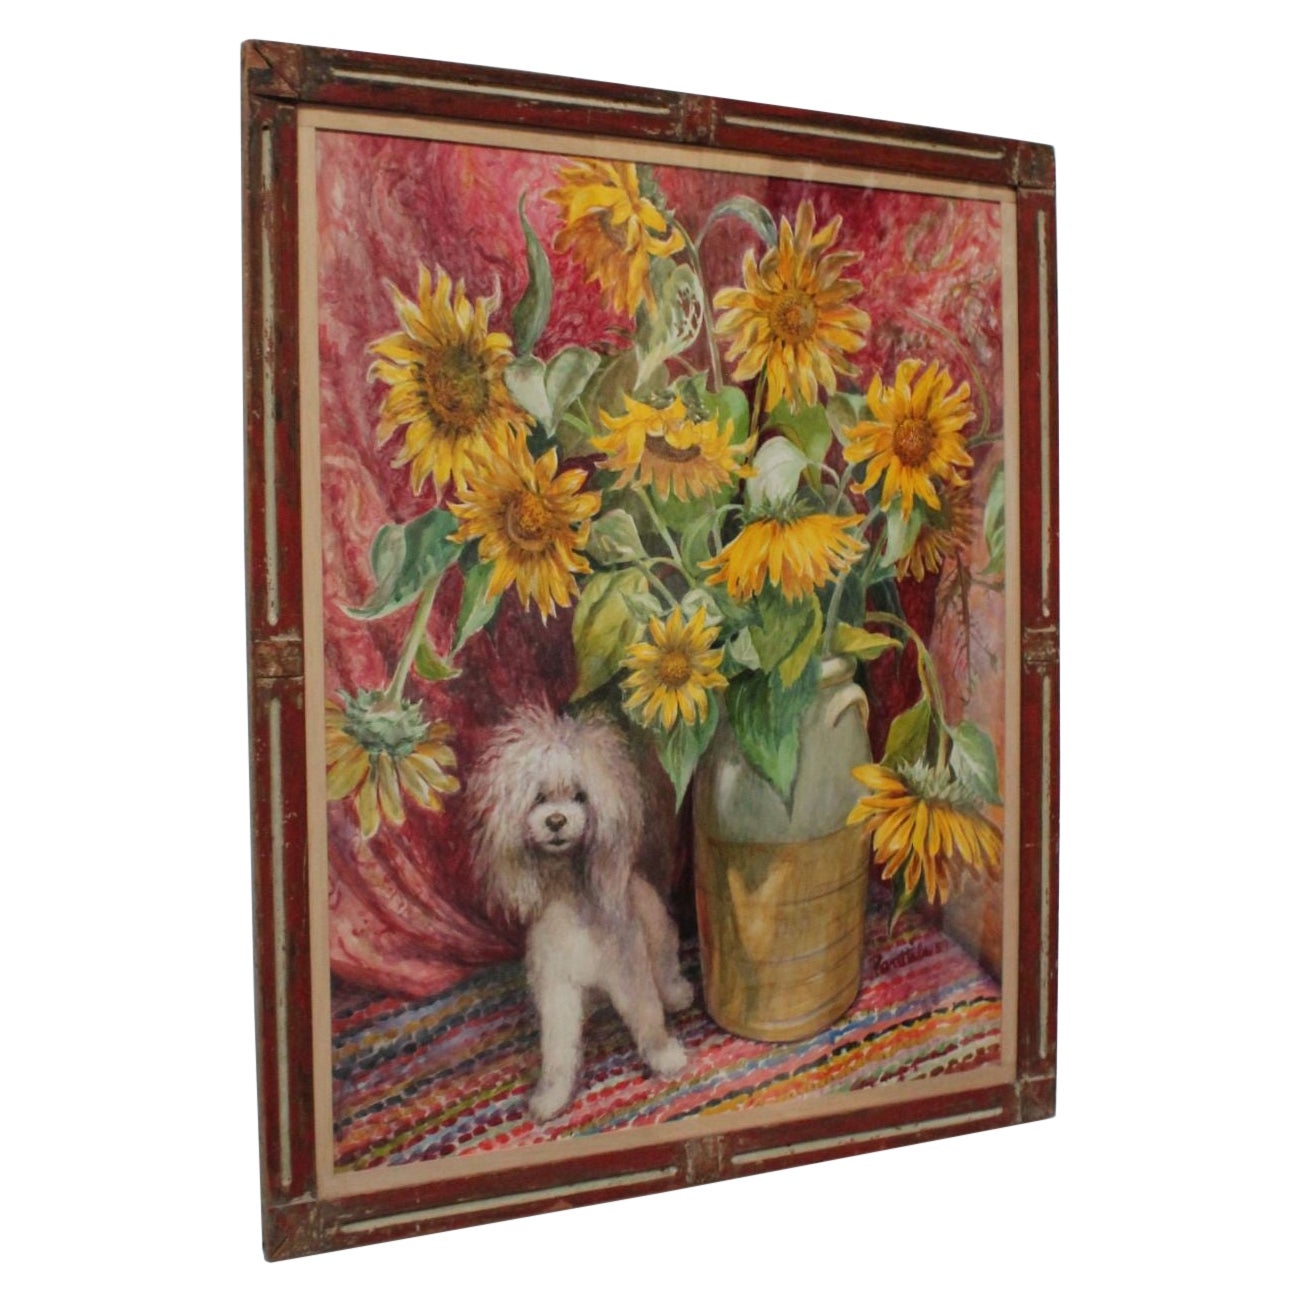 Parker Elwood Panttila "Poodle with Sunflowers" Acrylic Portrait Still Life